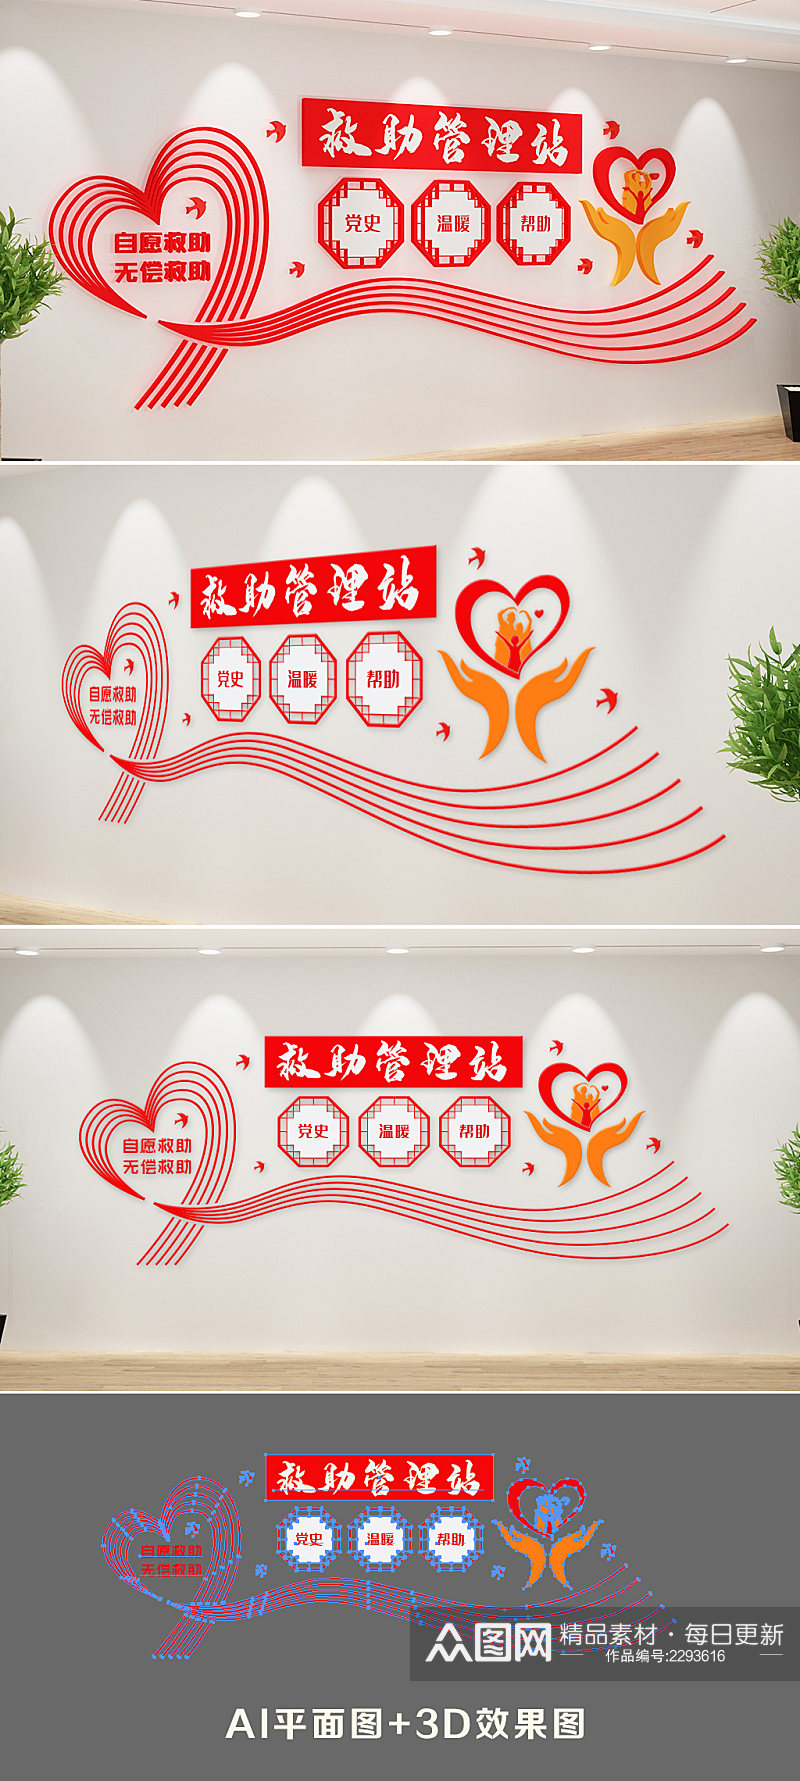 新中式救助管理站文化墙素材